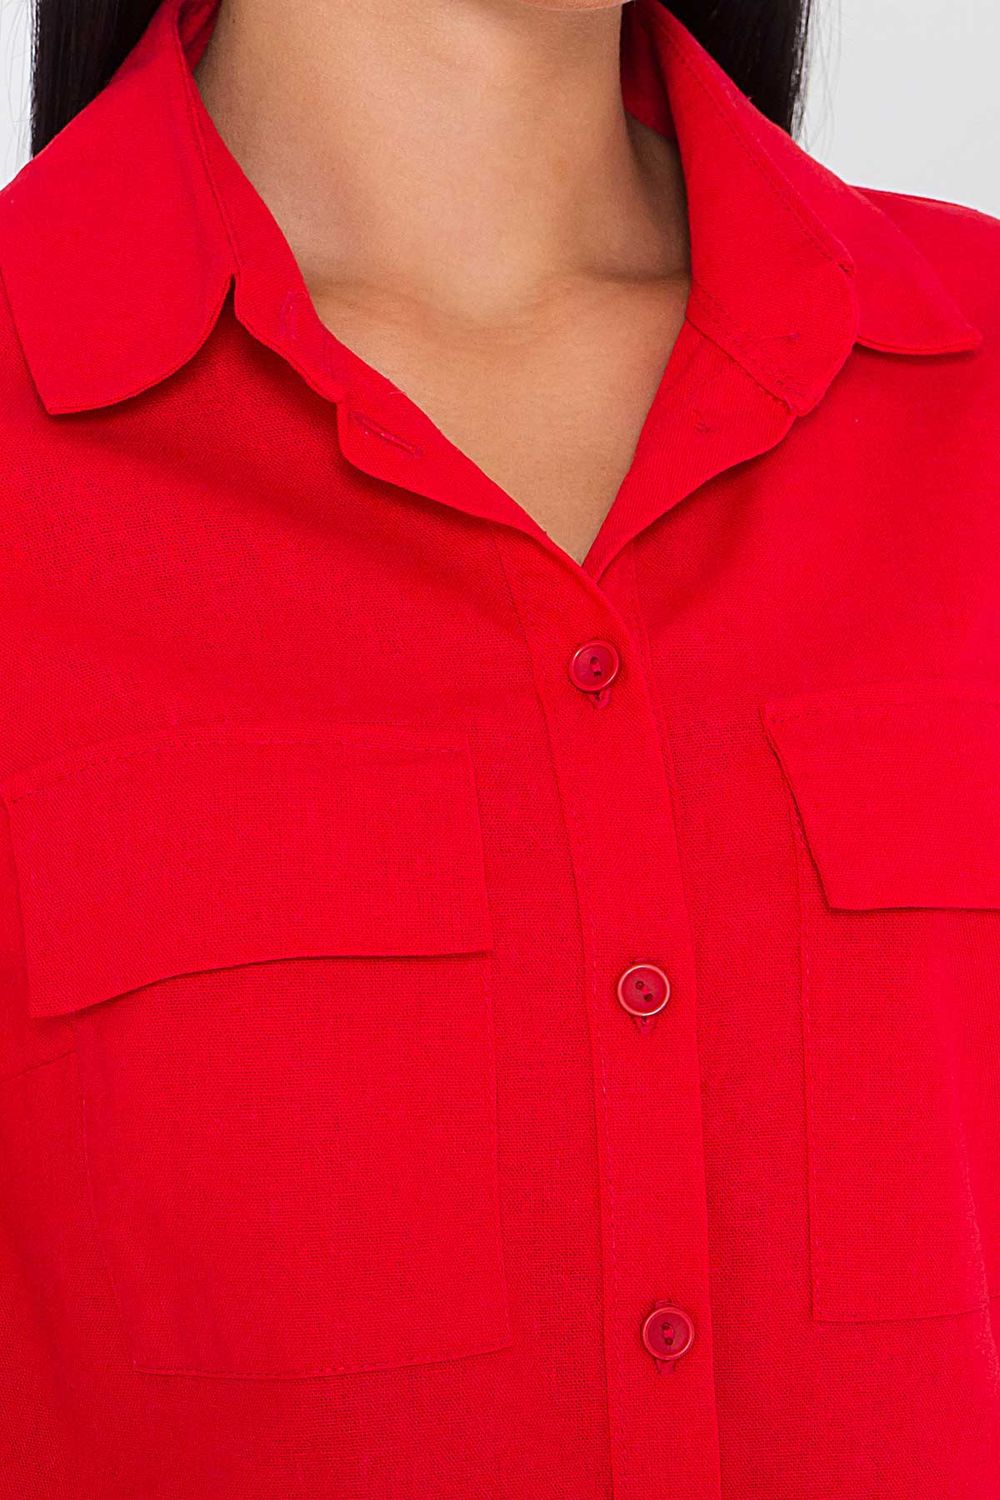 Жіночий літній костюм з шортами червоного кольору - фото